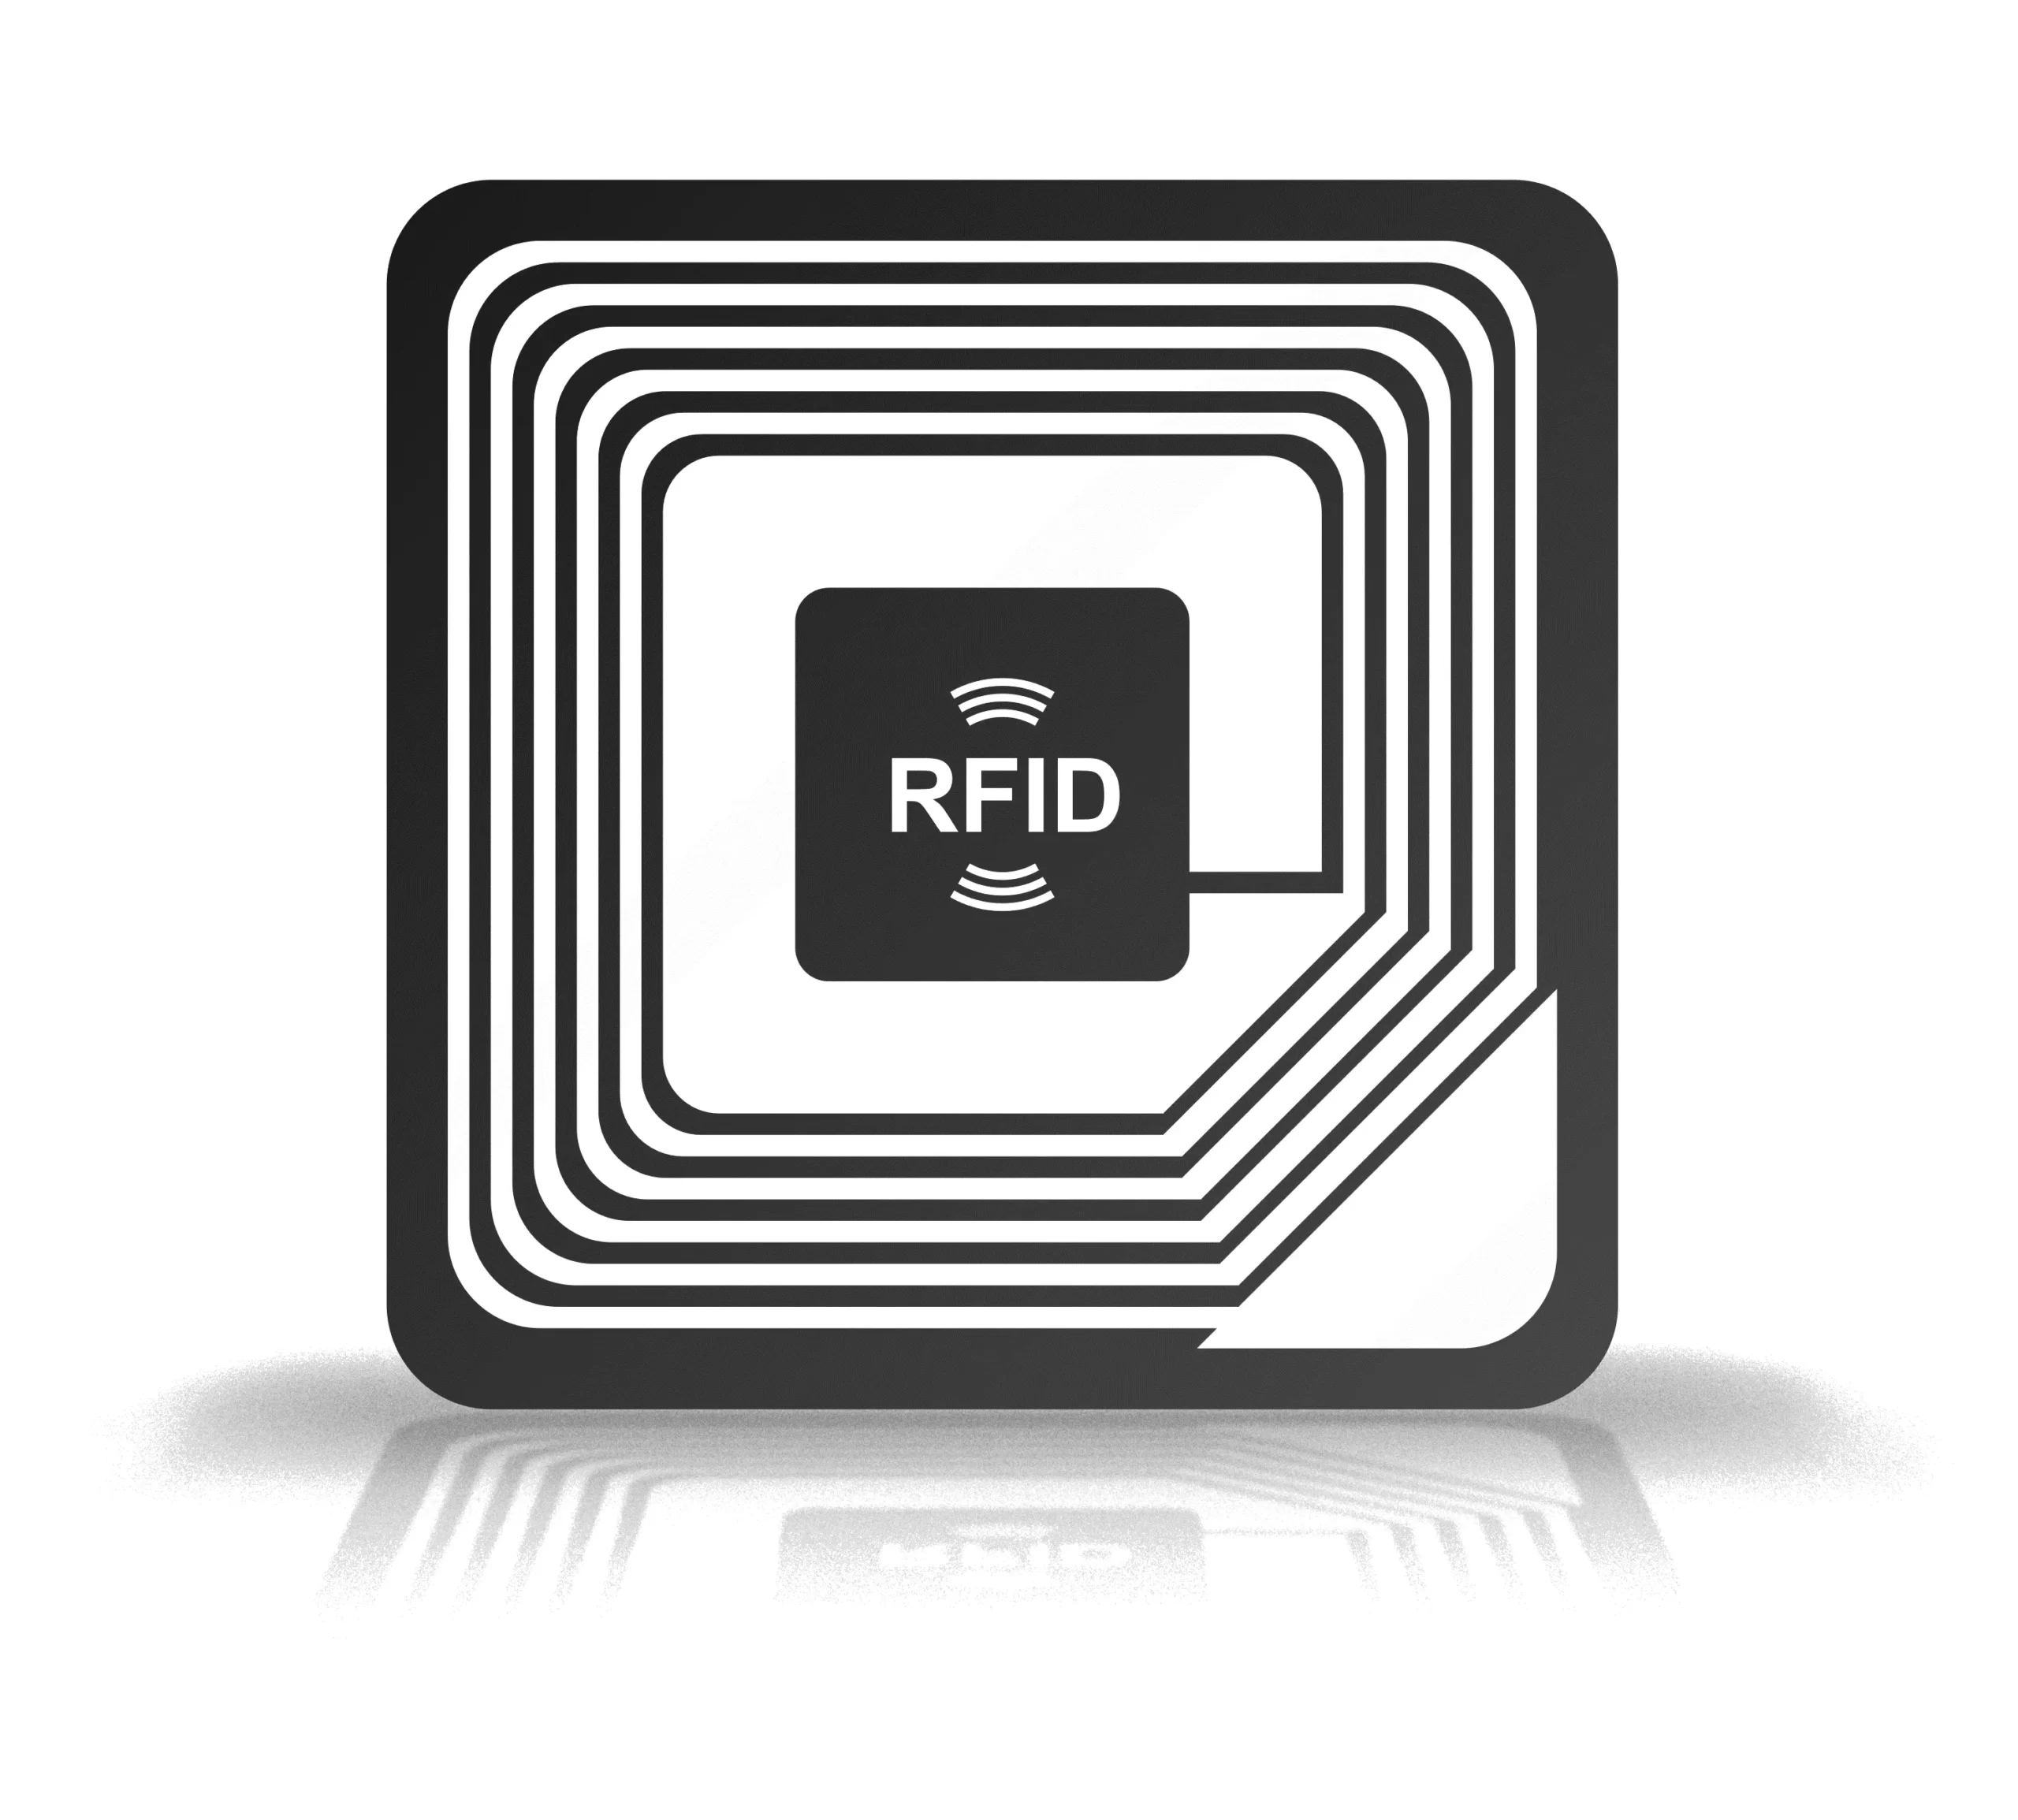 RFID - Radio-frequency identification - Радиочастотная идентификация - Радиометки - ISO/IEC 18000, 14443 - стандарт метода модуляции и протокола обмена бесконтактных пассивных карт ближнего радиуса действия